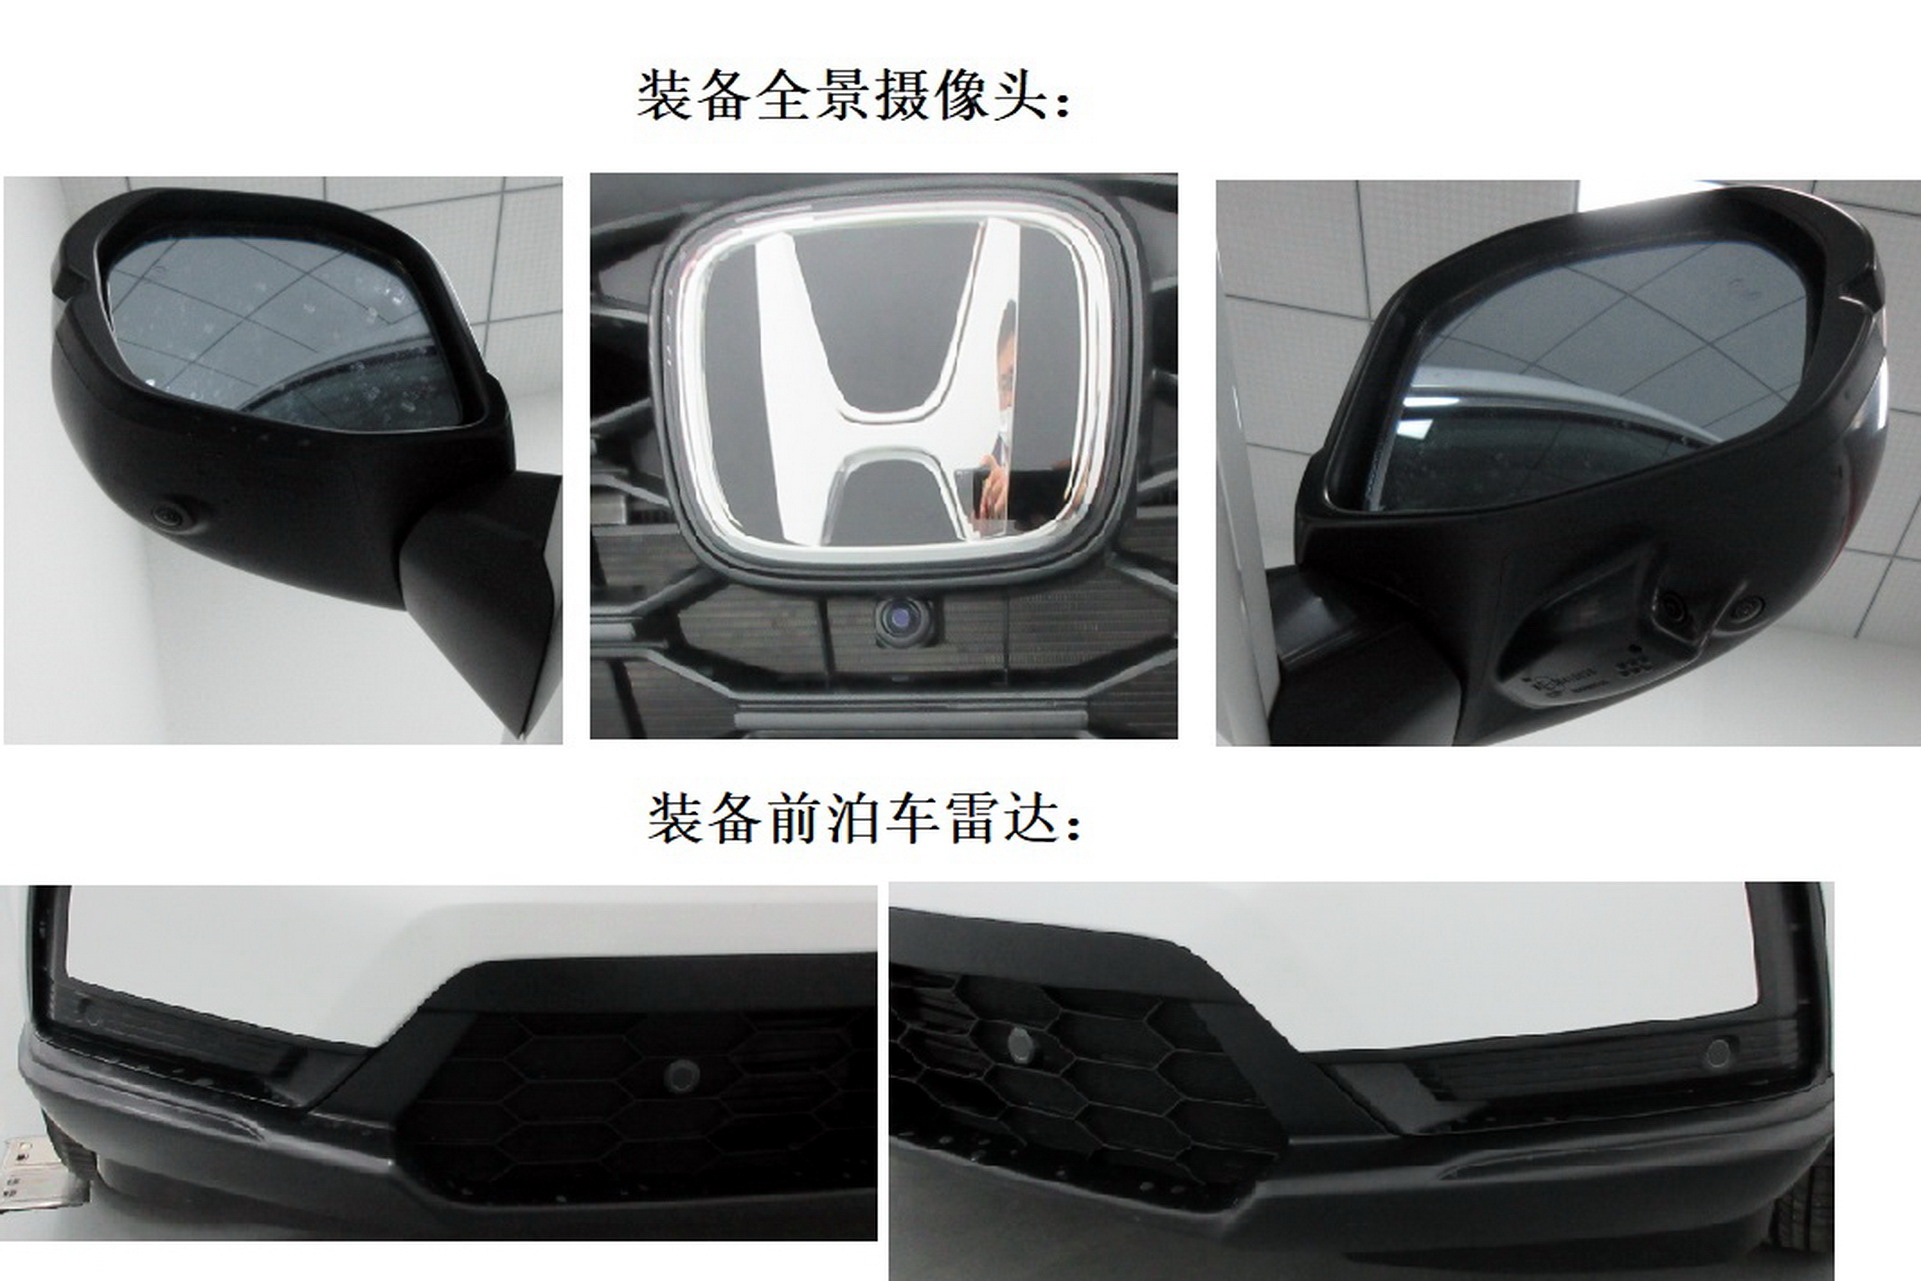 2023-Honda-CR-V-China-3.jpg